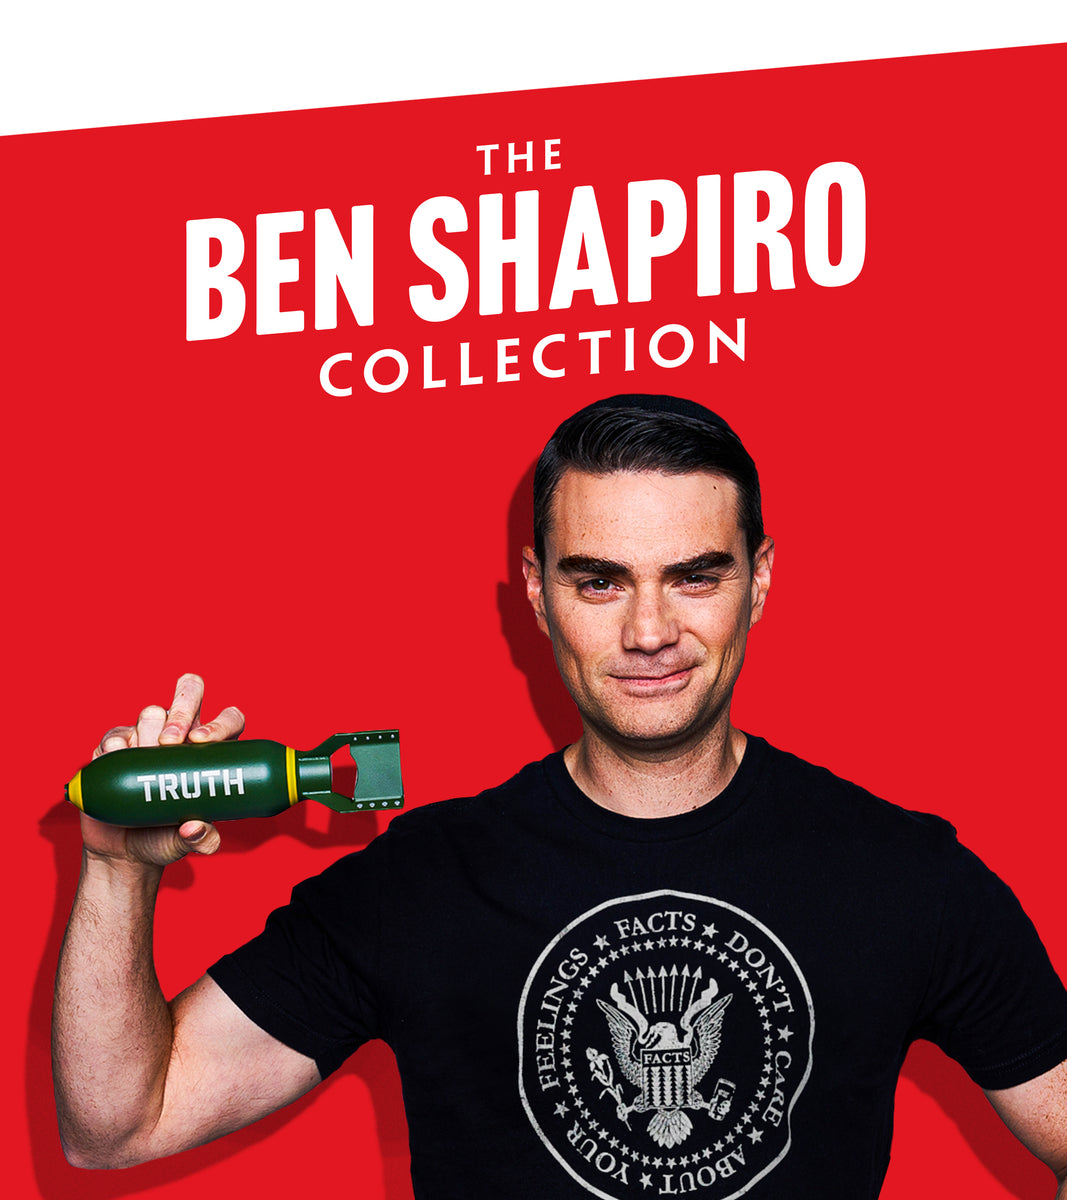 The Ben Shapiro Collection